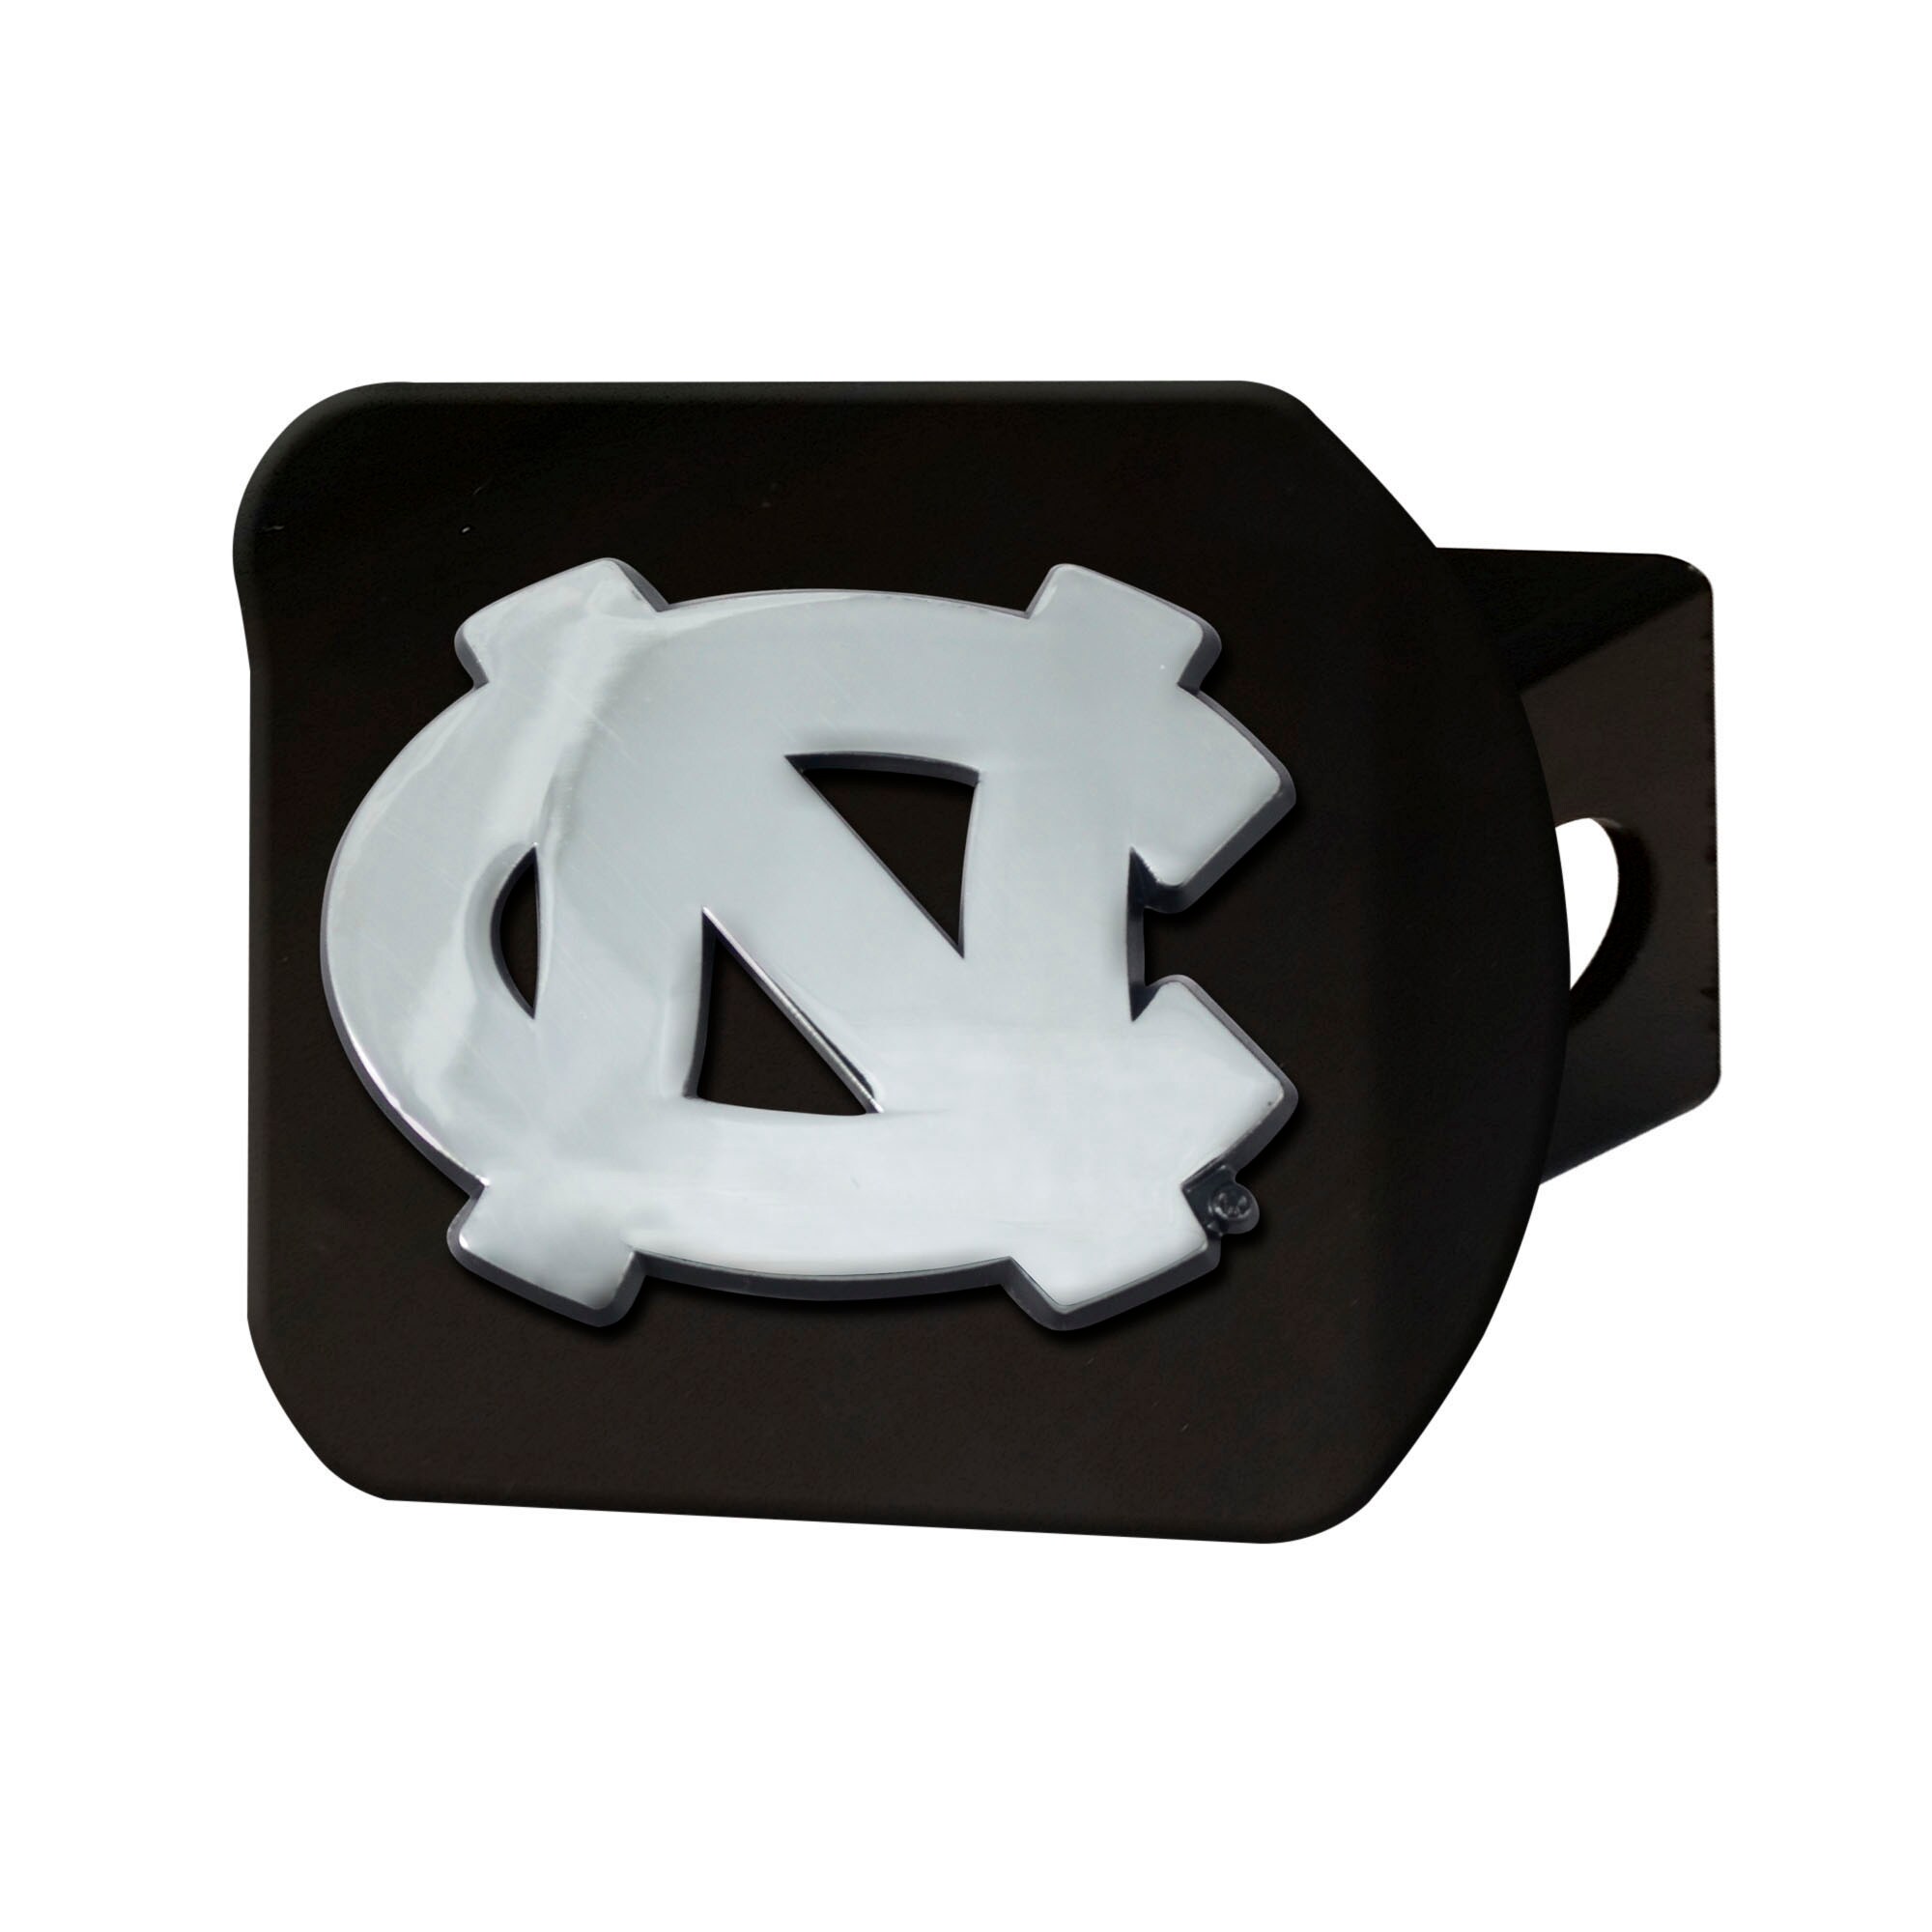 NCAA North Carolina Tar Heels Steering Wheel Cover 